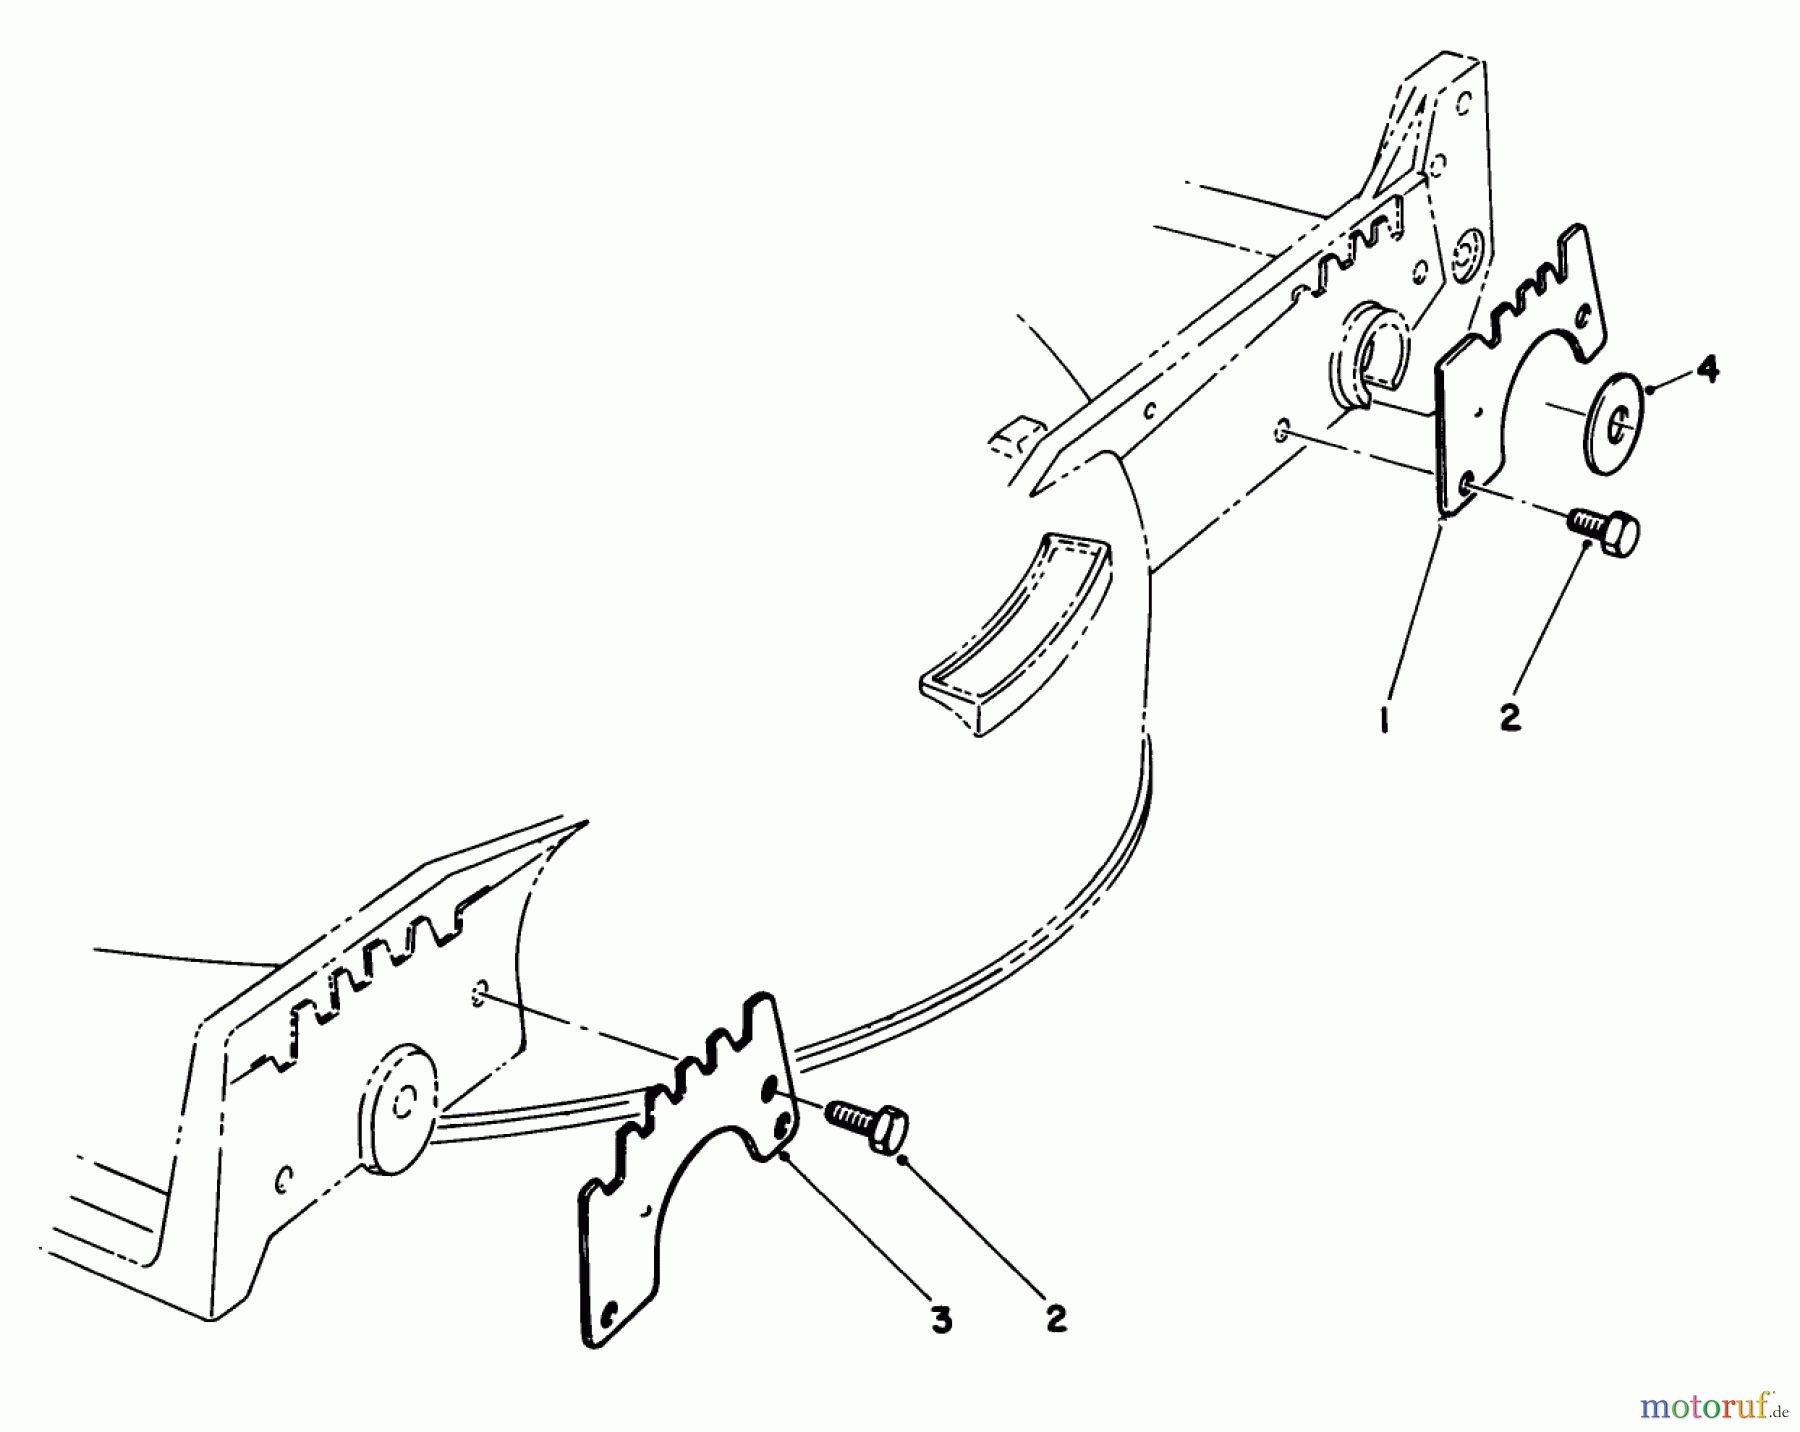  Toro Neu Mowers, Walk-Behind Seite 1 20588 - Toro Lawnmower, 1987 (7000001-7999999) WEAR PLATE KIT MODEL NO. 49-4080 (OPTIONAL)